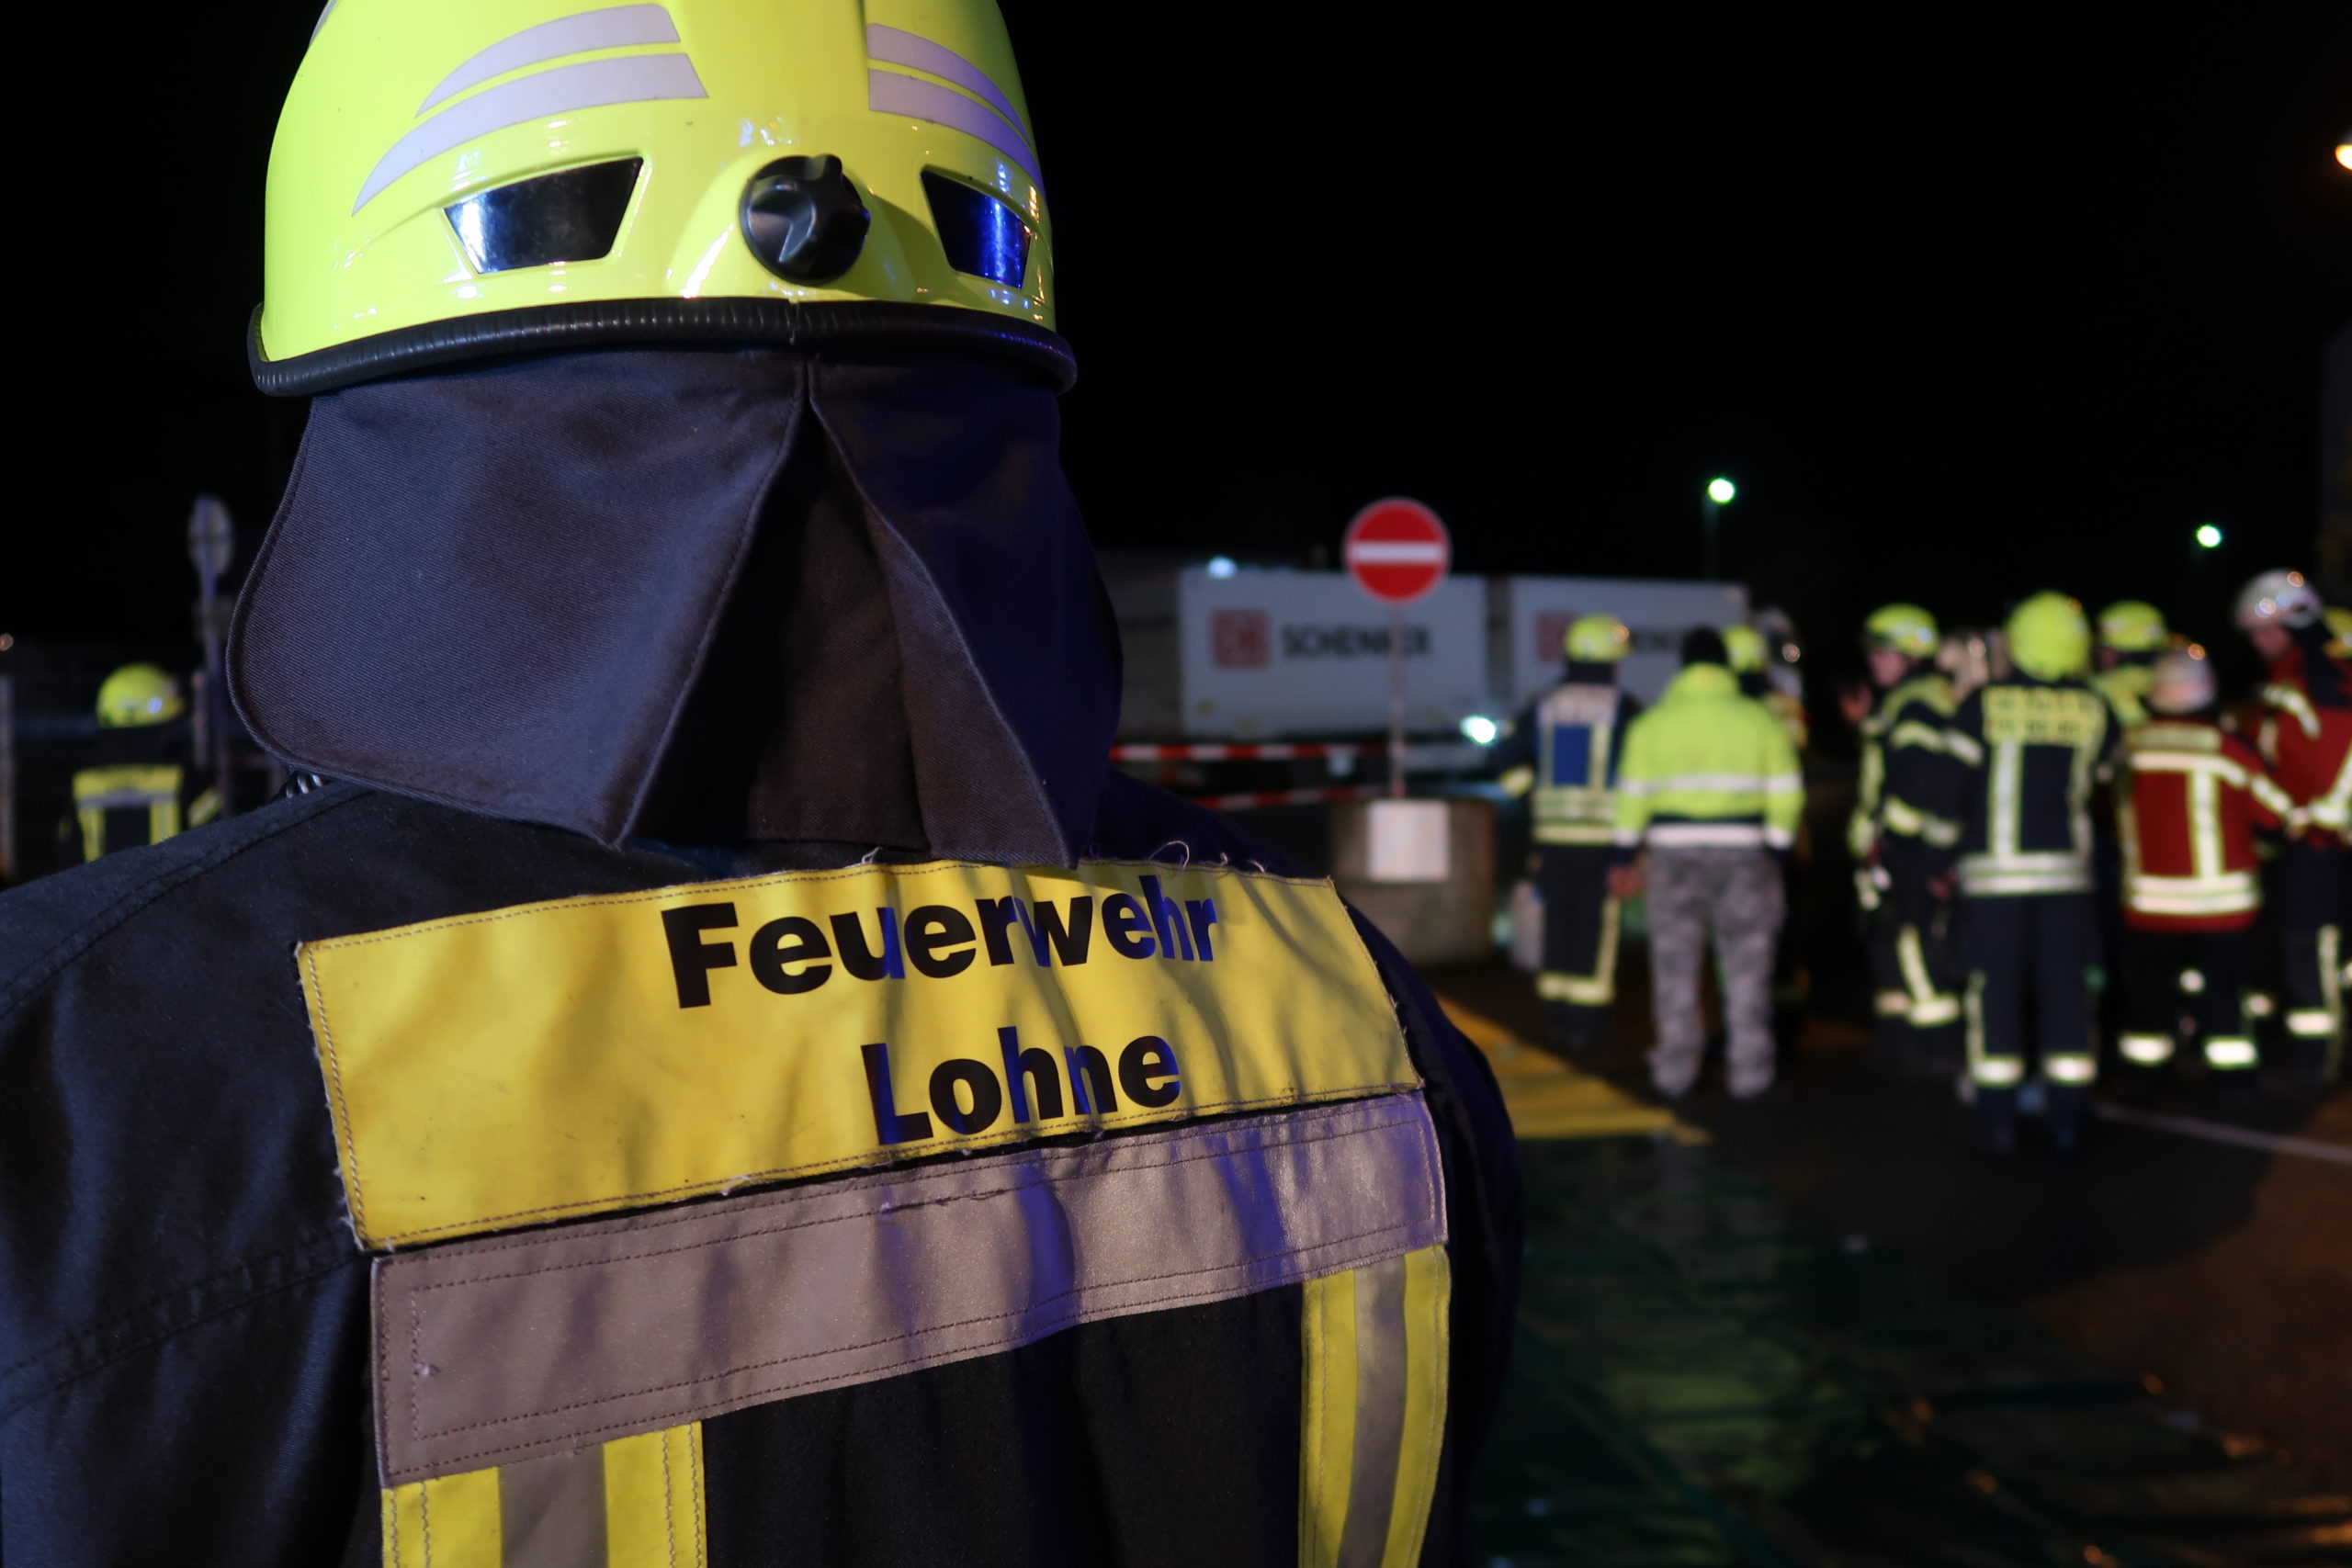 (c) Feuerwehr-lohne.de